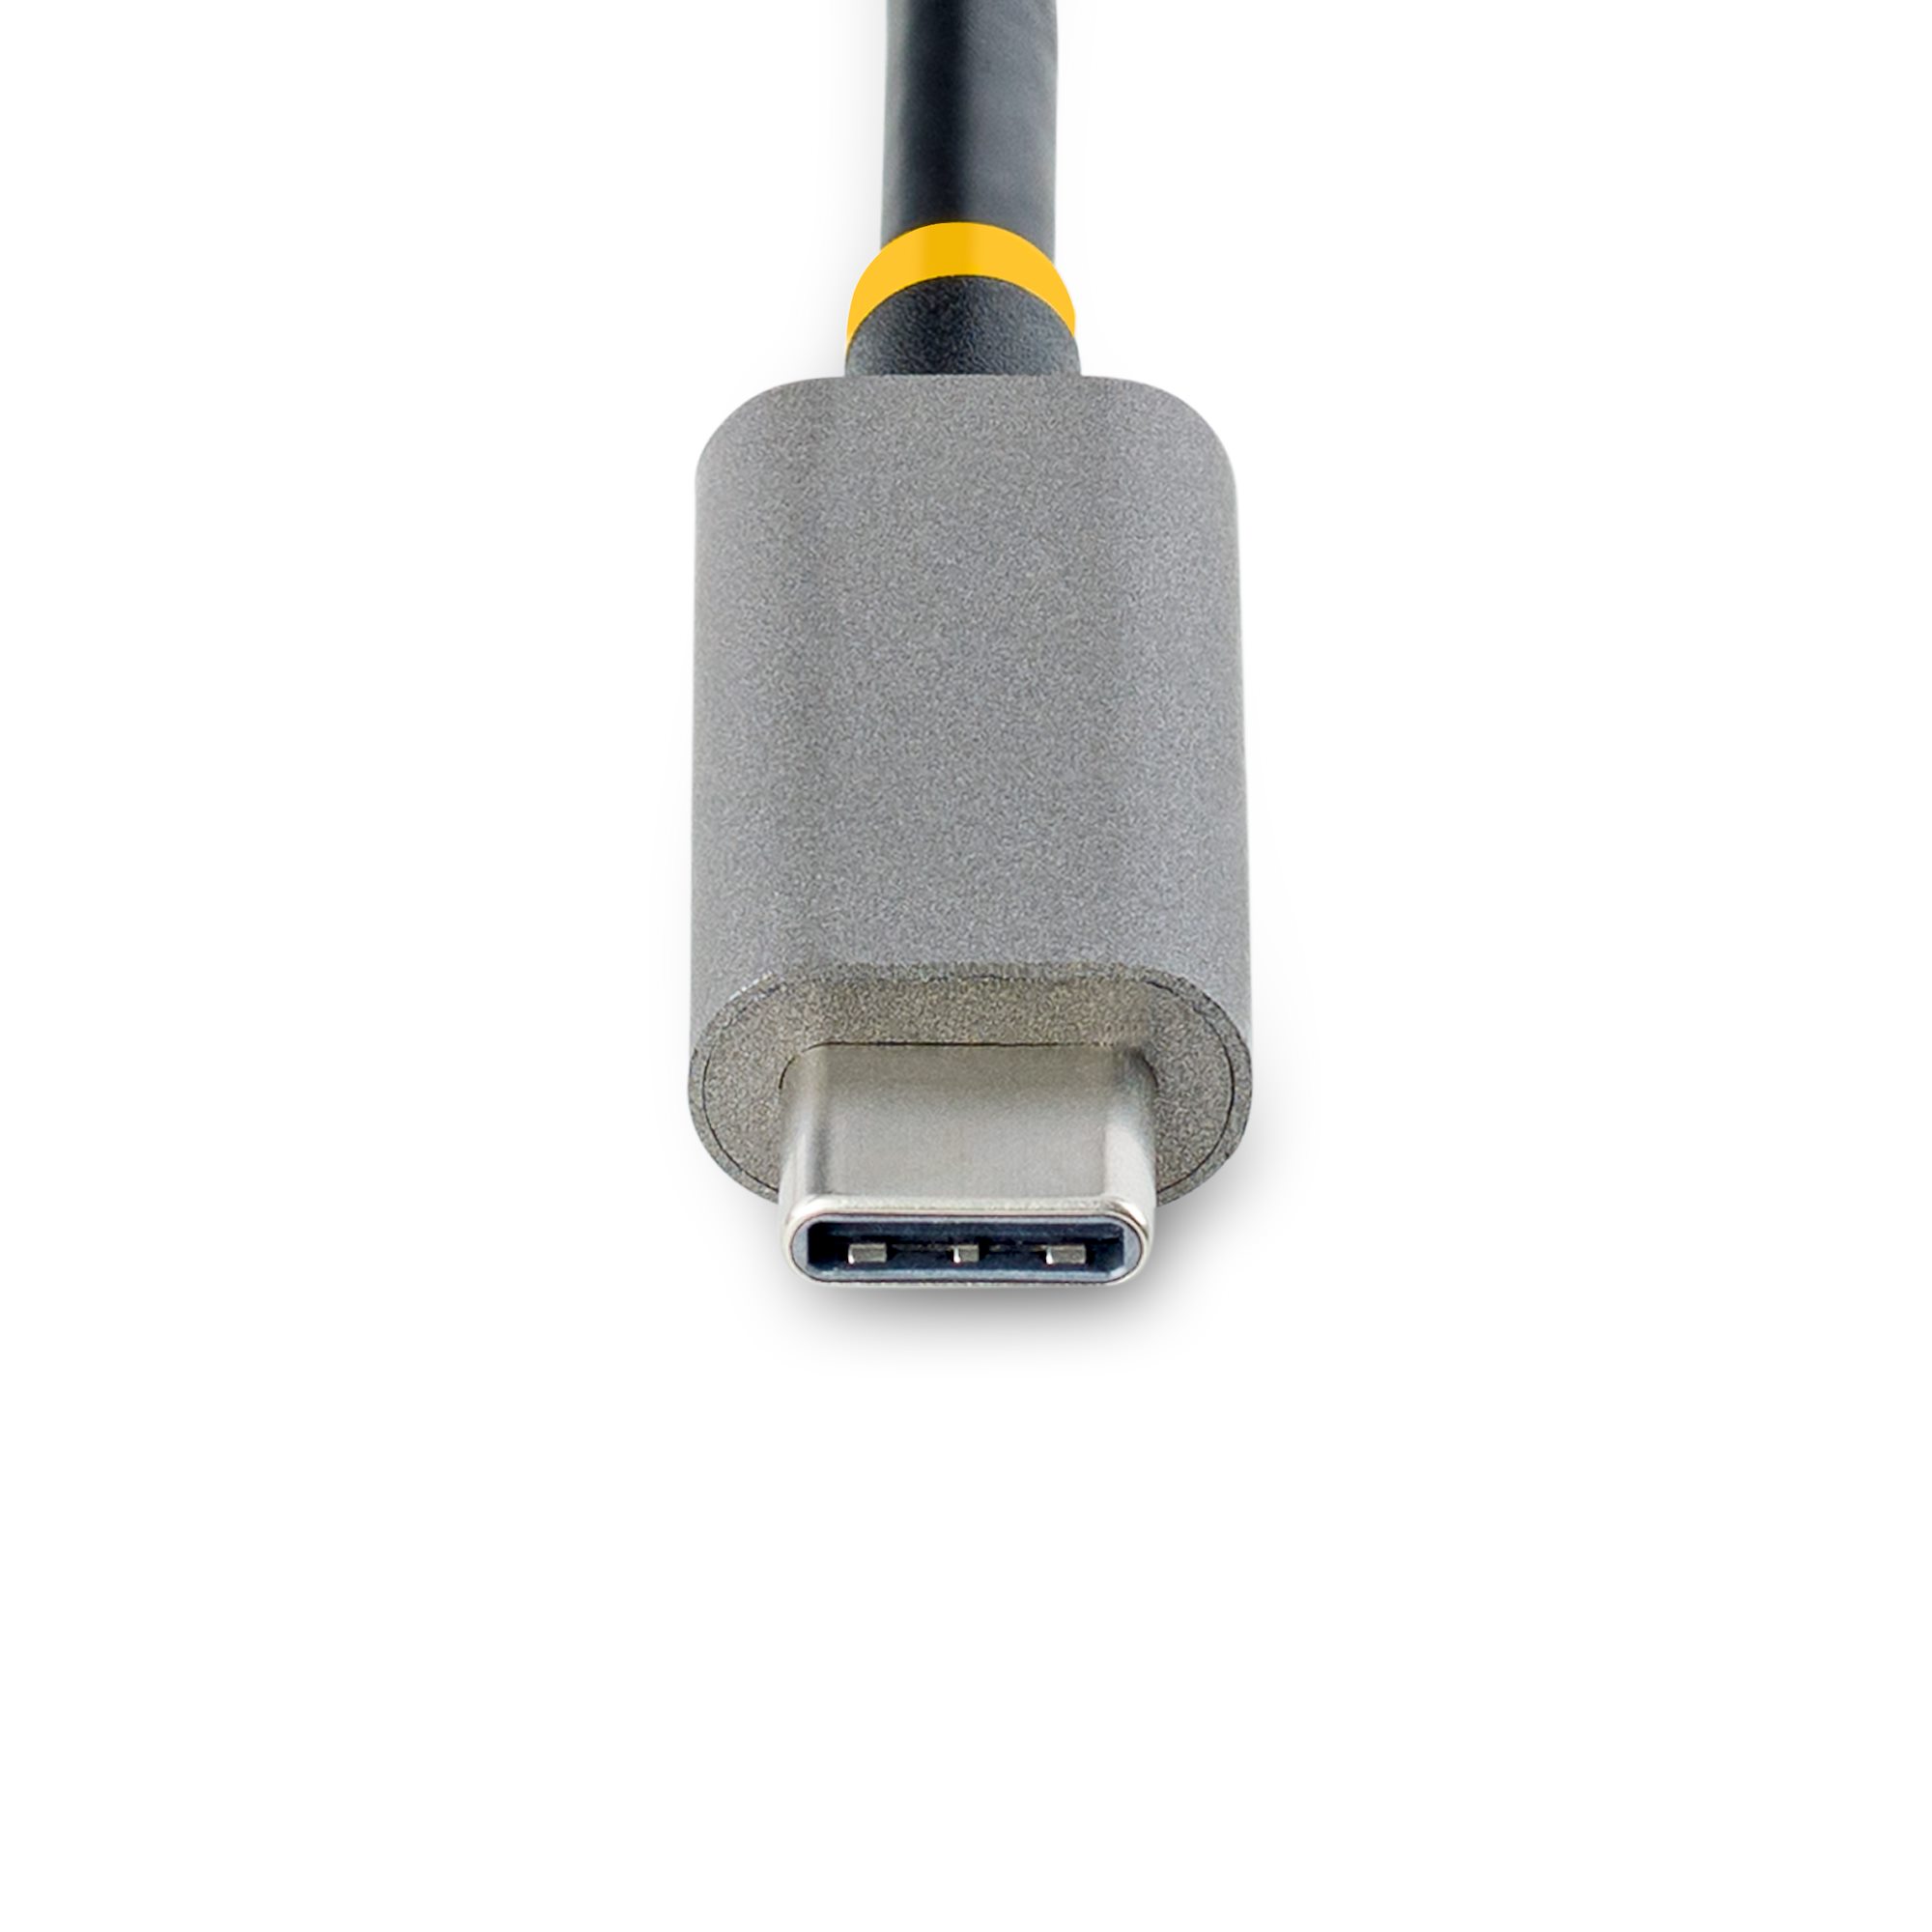 HUB USB-C DE 3 PUERTOS USB-A - USB 3.0 5GBPS - ALIMENTADO POR EL BUS -  CONCENTRADOR USB-C DE 3 PUERTOS USB-A - ETHERNET - STARTECH.COM MOD.  5G3AGBB-USB-C-HUB